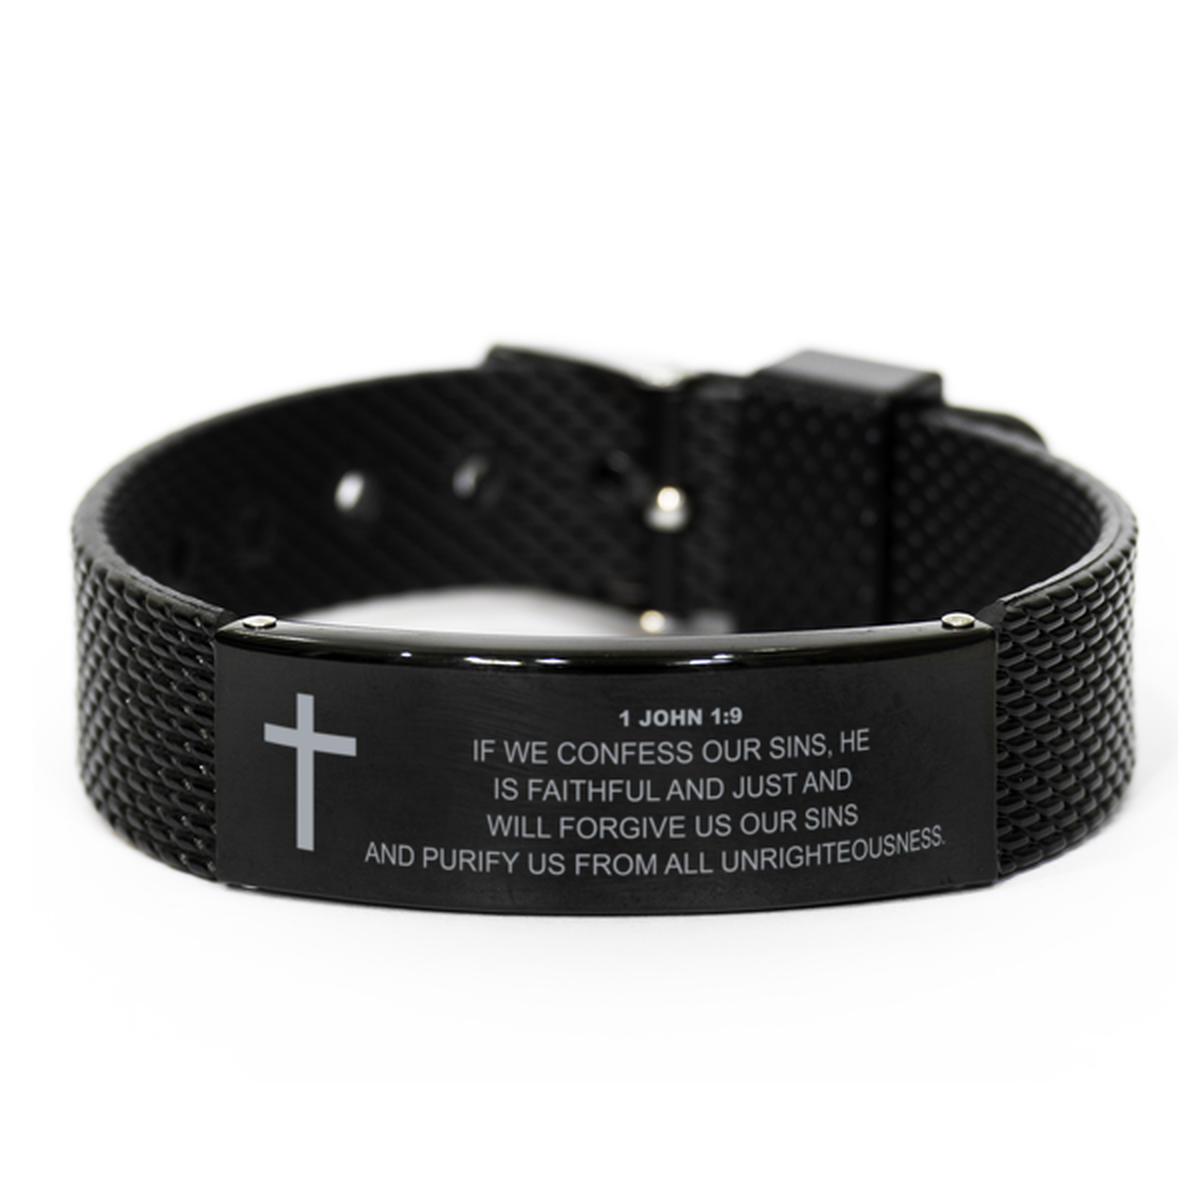 1 John 1 9 Bracelet, Bible Verse Bracelet, Christian Bracelet, Christian Birthday Gift, Black Stainless Steel Leather Bracelet, Gift for Christian.